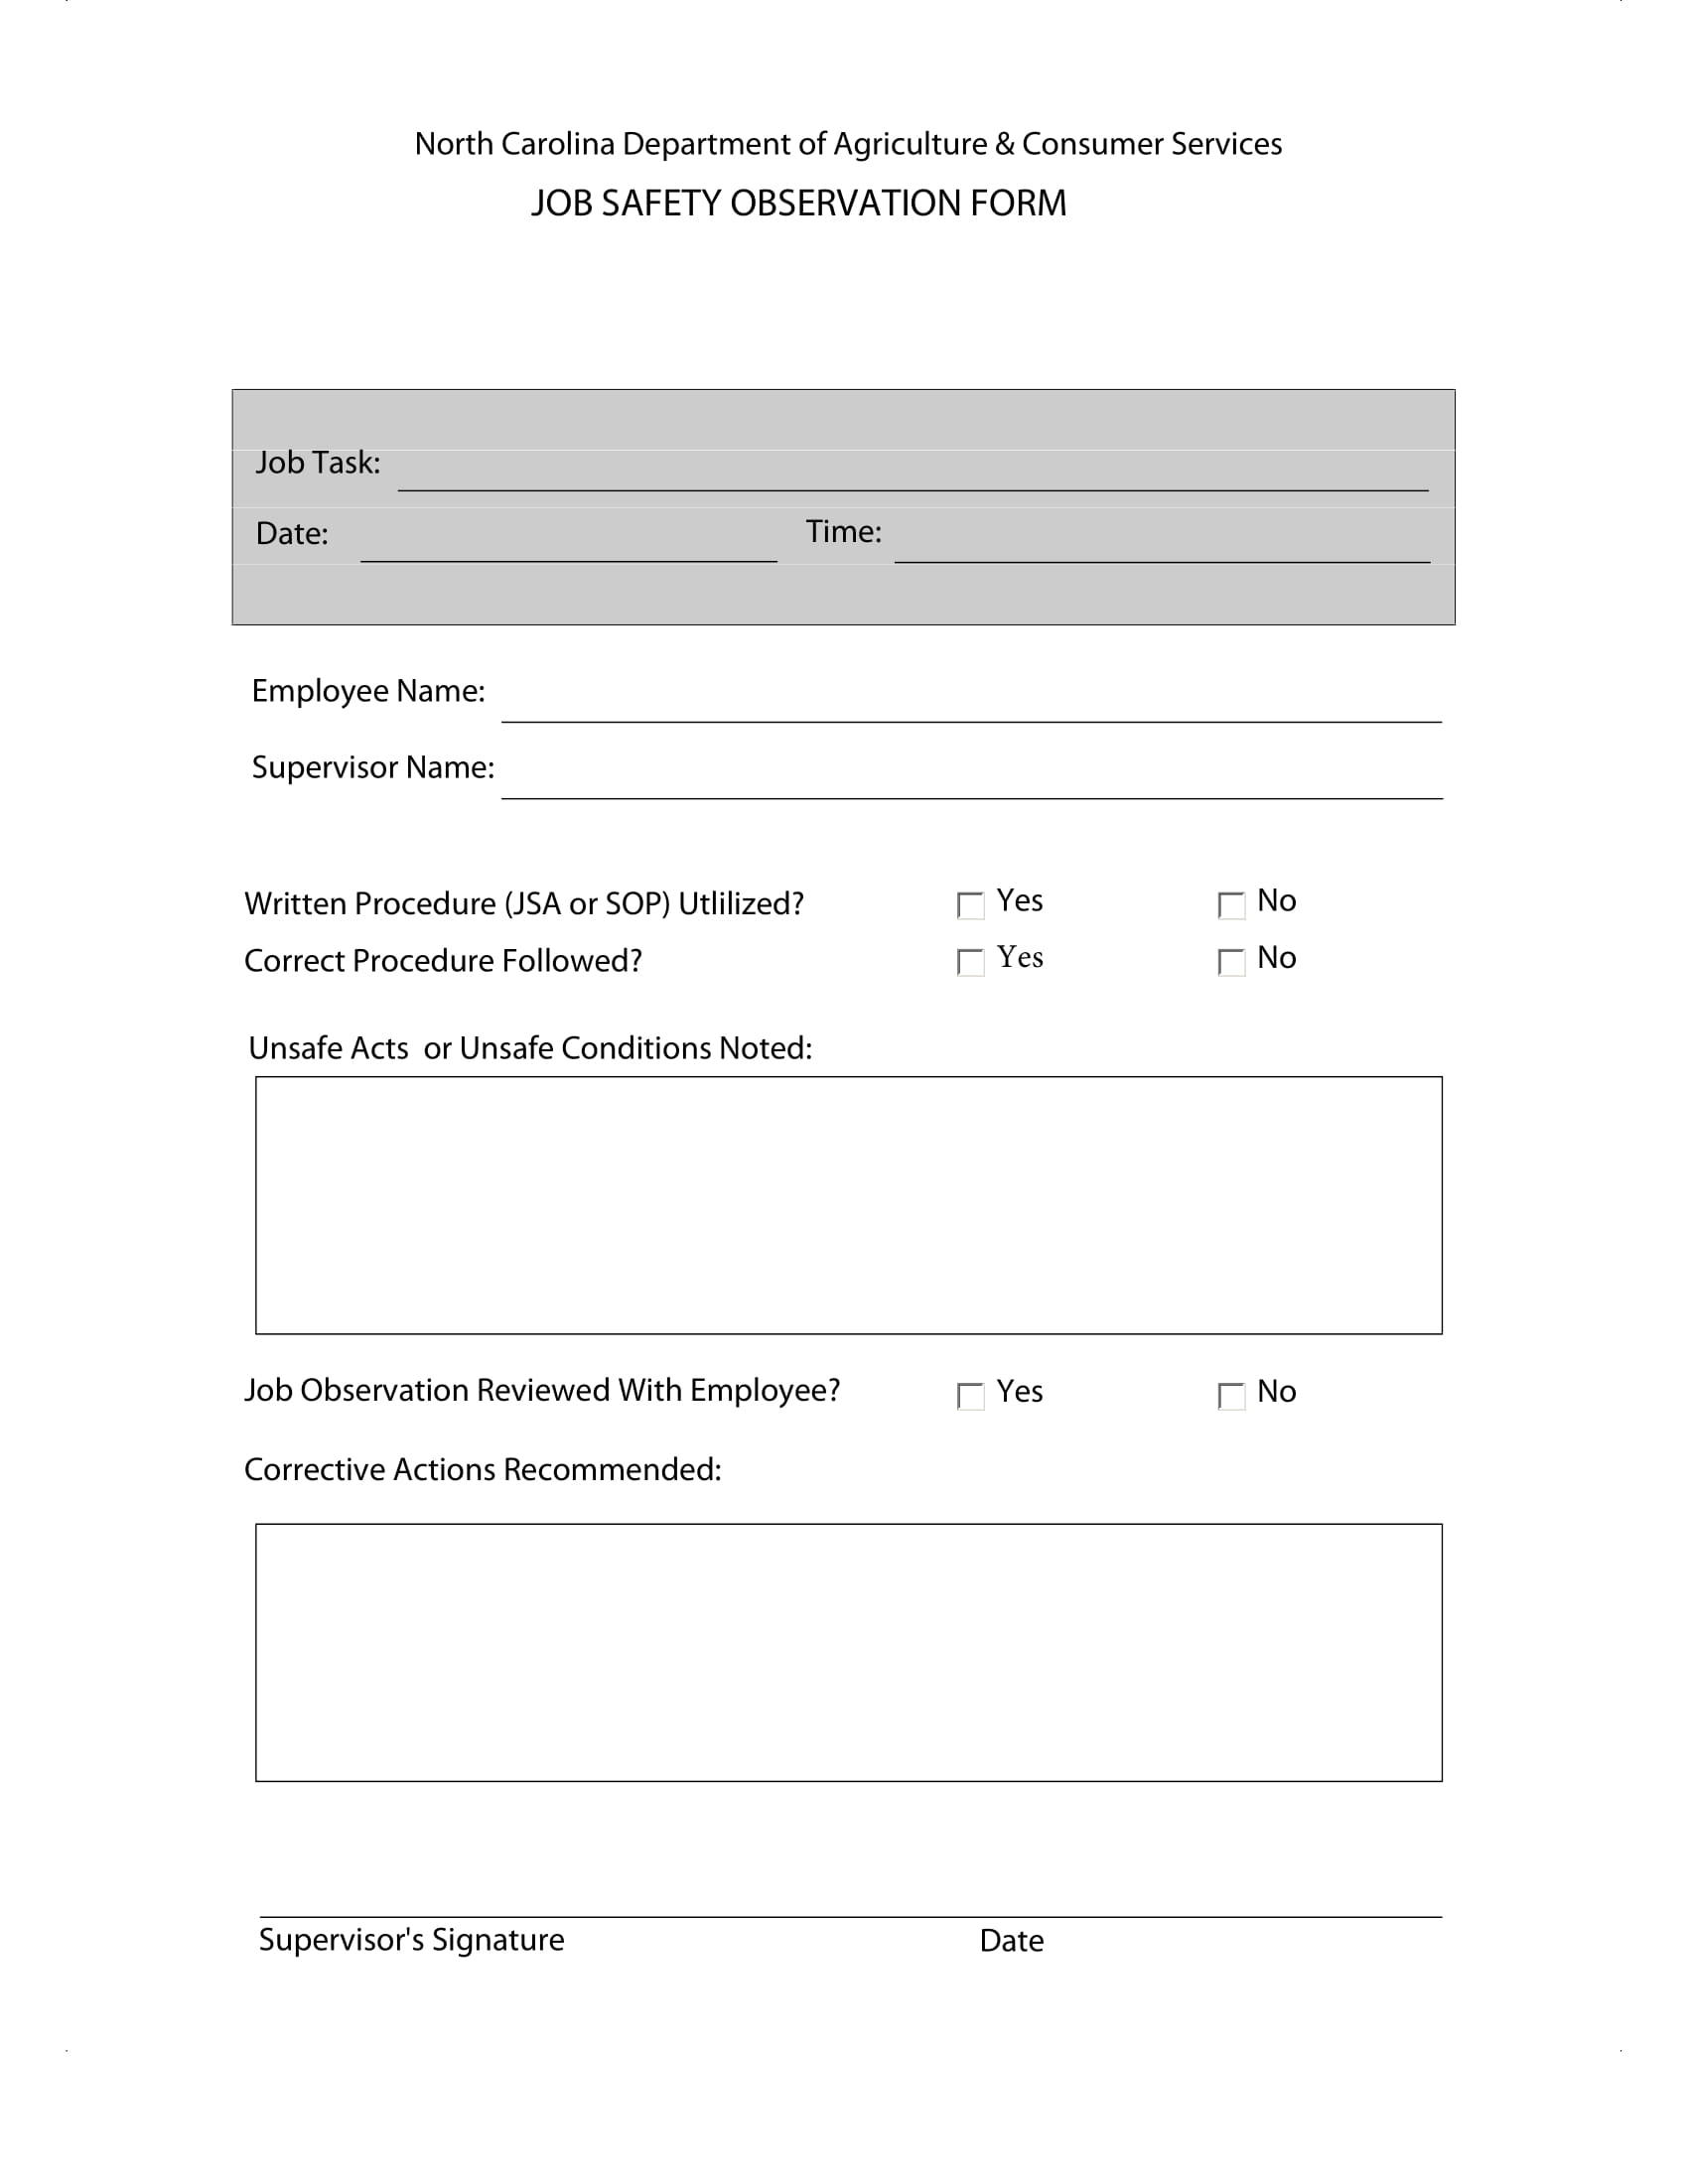 job safety observation form sample 1